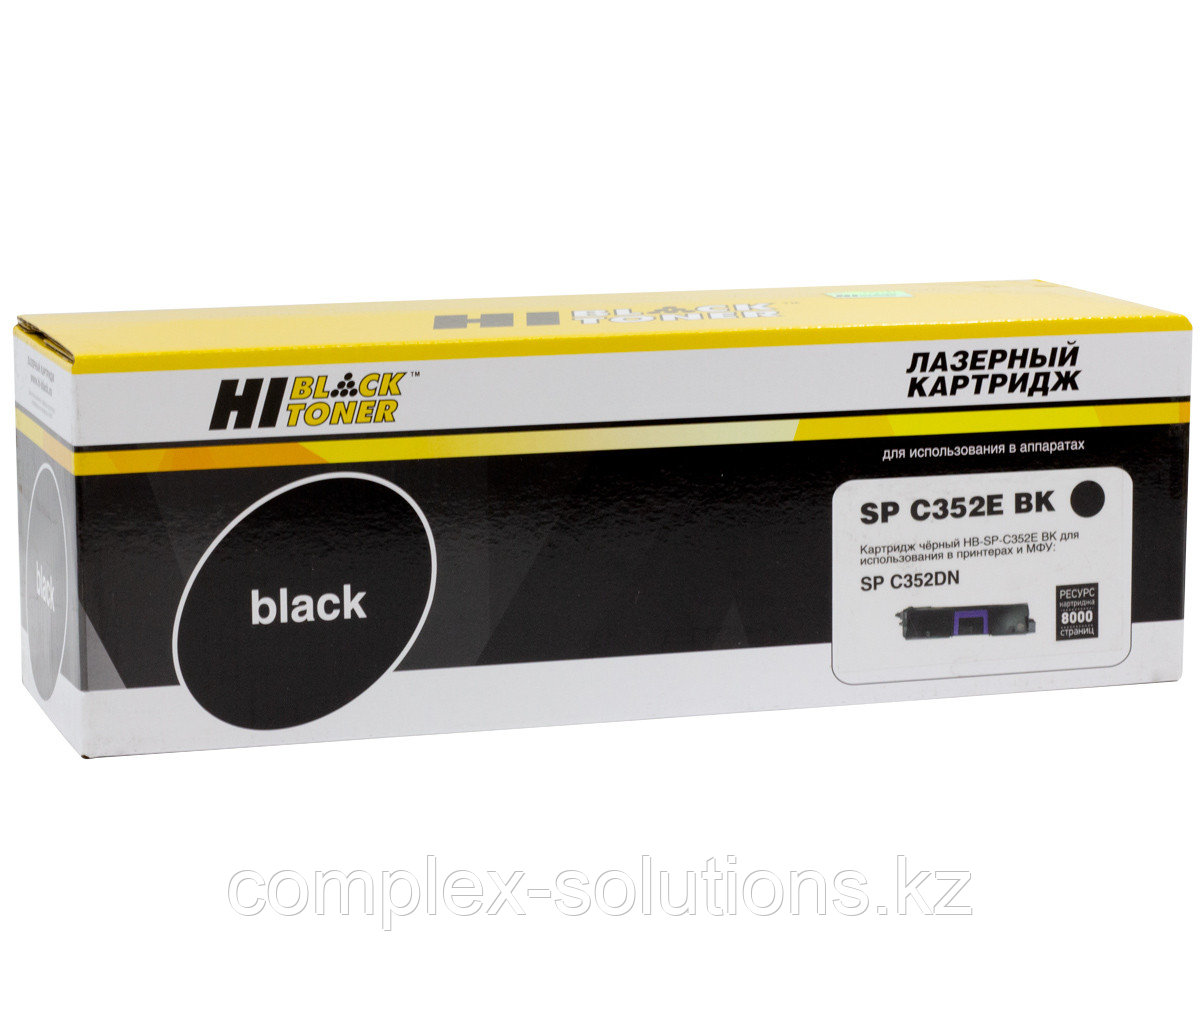 Тонер картридж Hi-Black [SPC352E BK] для Ricoh Aficio SP C352DN, Bk, 8K | [качественный дубликат]